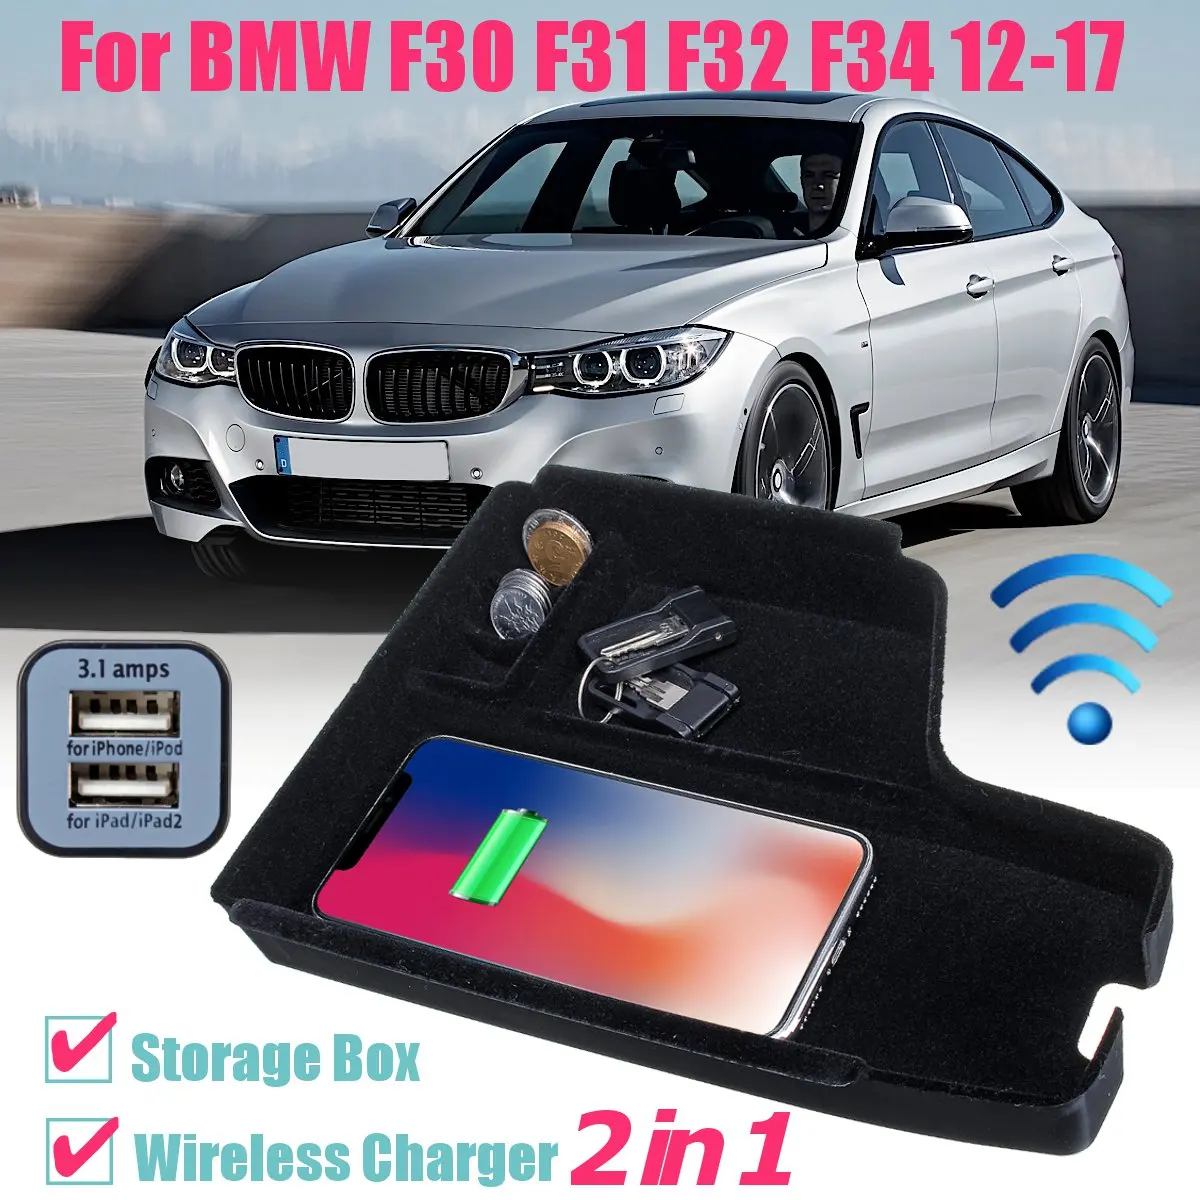 Мобильный телефон беспроводной зарядки центральный подлокотник коробка для хранения 12 В DC для BMW F30 F31 F32 F34 2012 2013 LHD